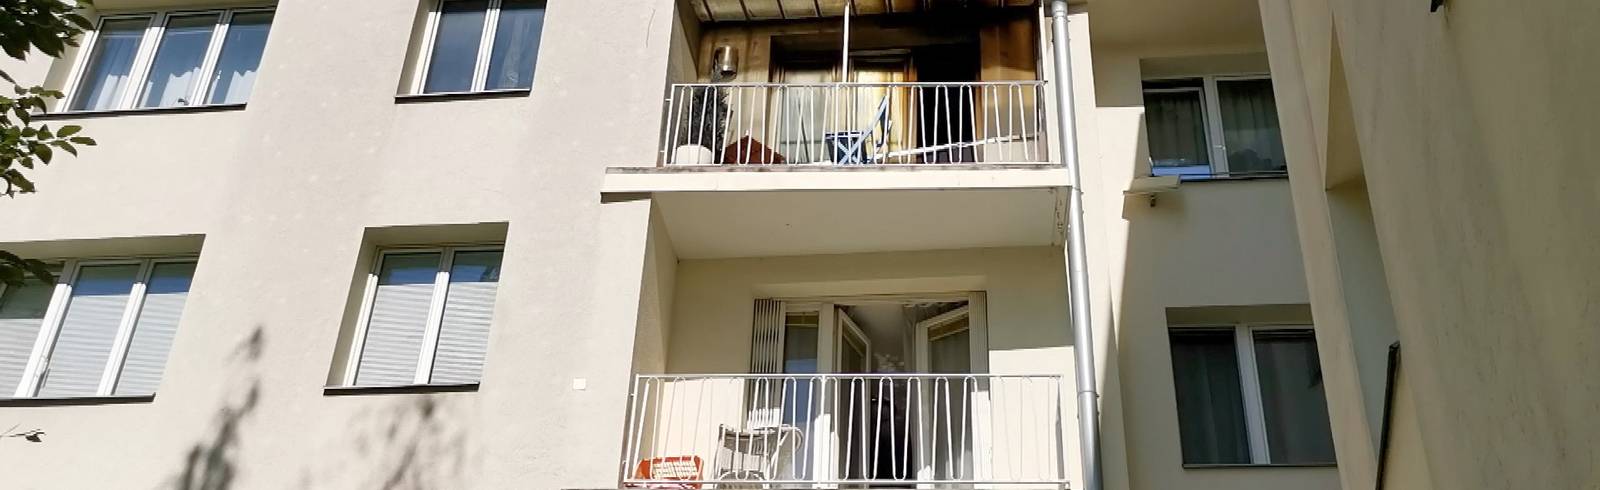 Wohnungsbrand: 60-Jährige starb